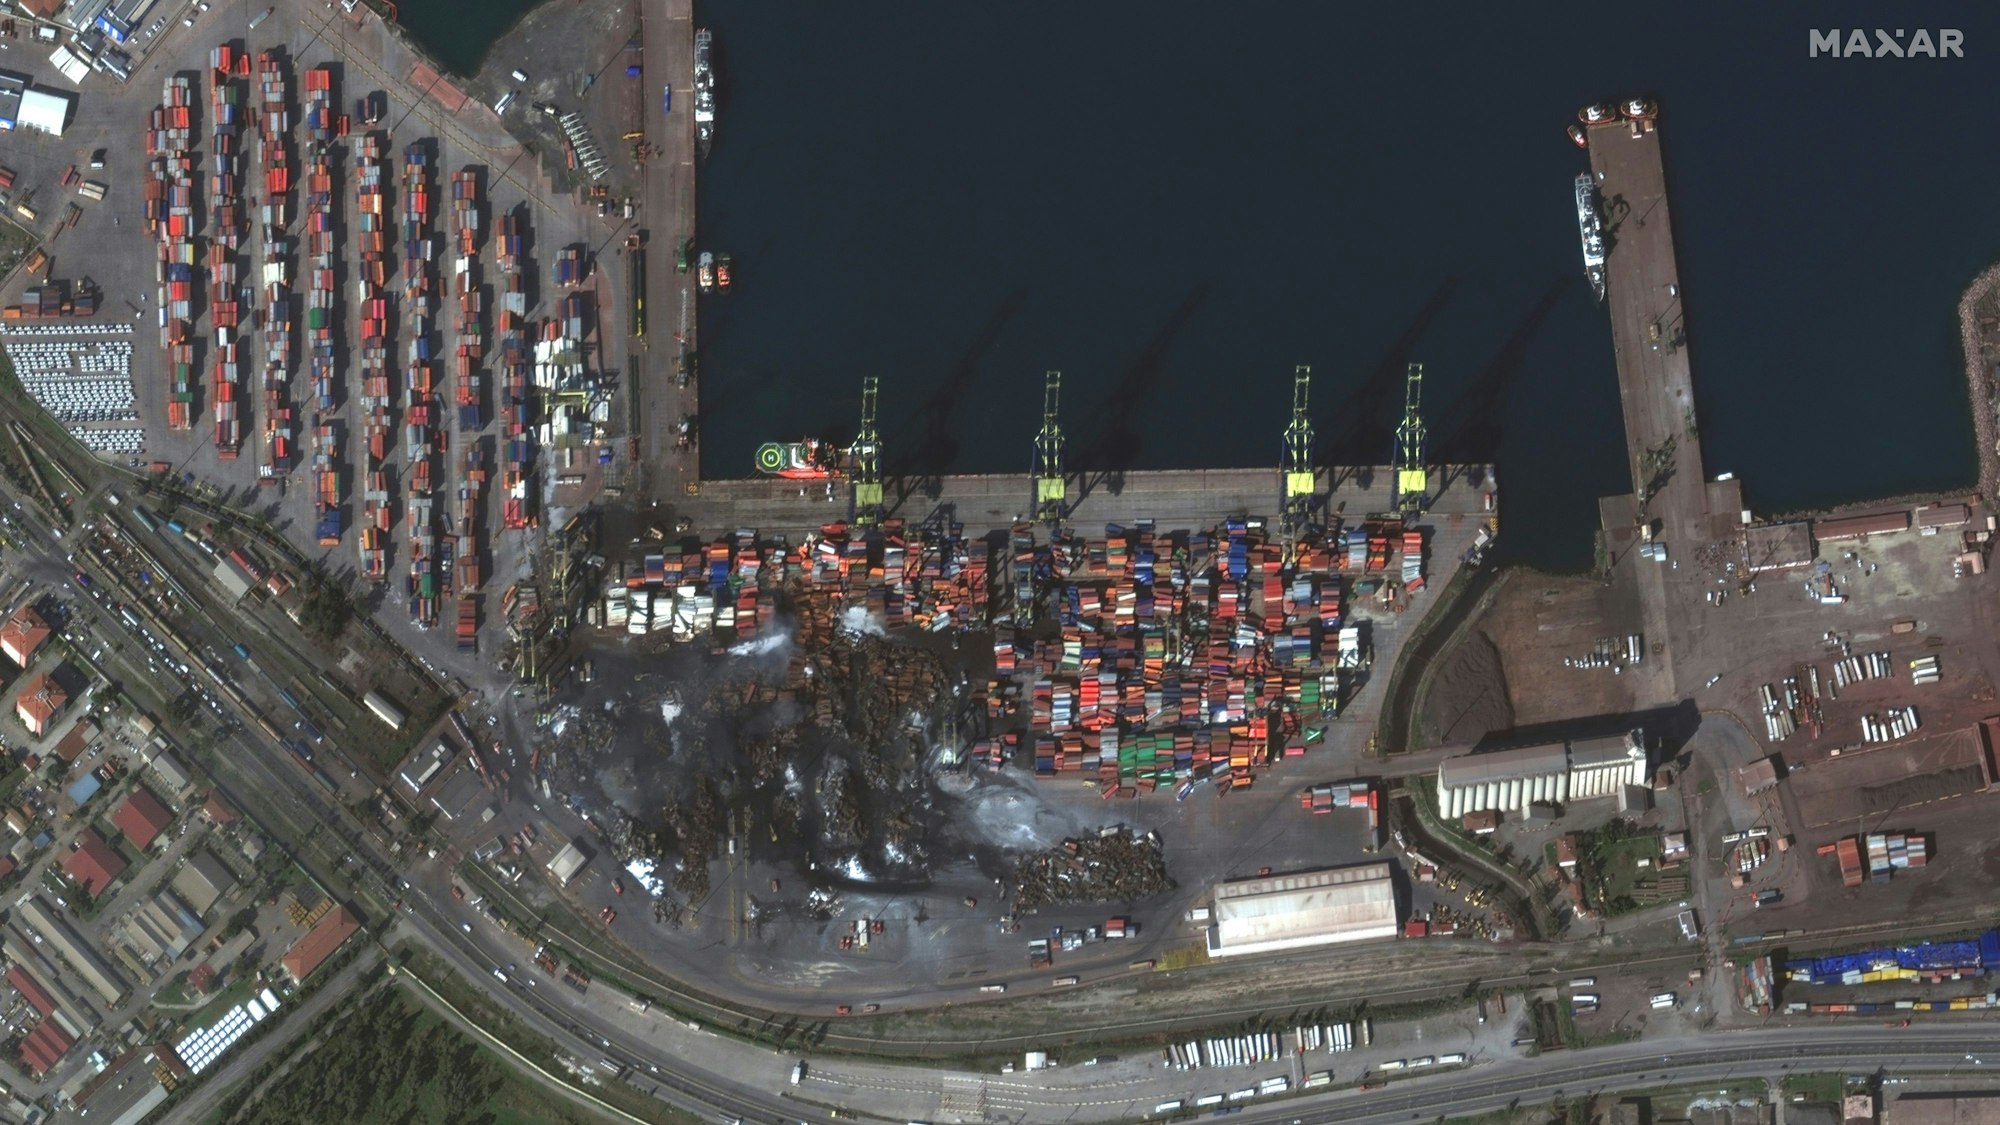 12.02.2023, Türkei, Iskenderun: Dieses von Maxar Technologies bereitgestellte Satellitenbild zeigt einen Überblick über beschädigte Container und Hafenanlagen nach einem Erdbeben in Iskenderun, Türkei.